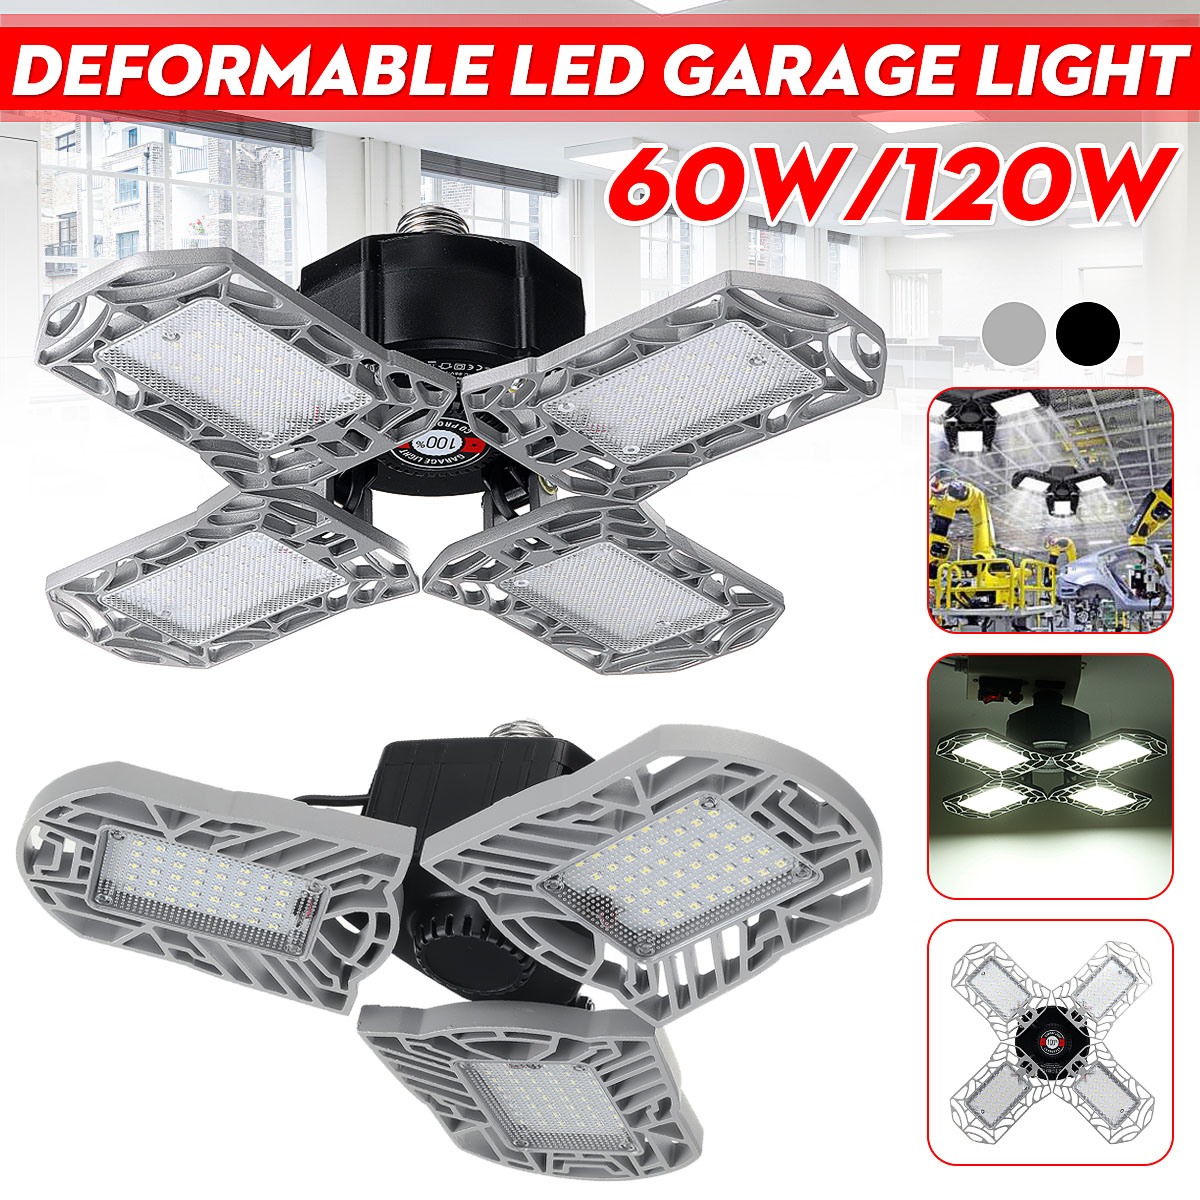 60W120W-85-265V-34-Deformable-LED-Garage-Lights-Workshop-Ceiling-Lamp-E26-E27-Base-1735754-1